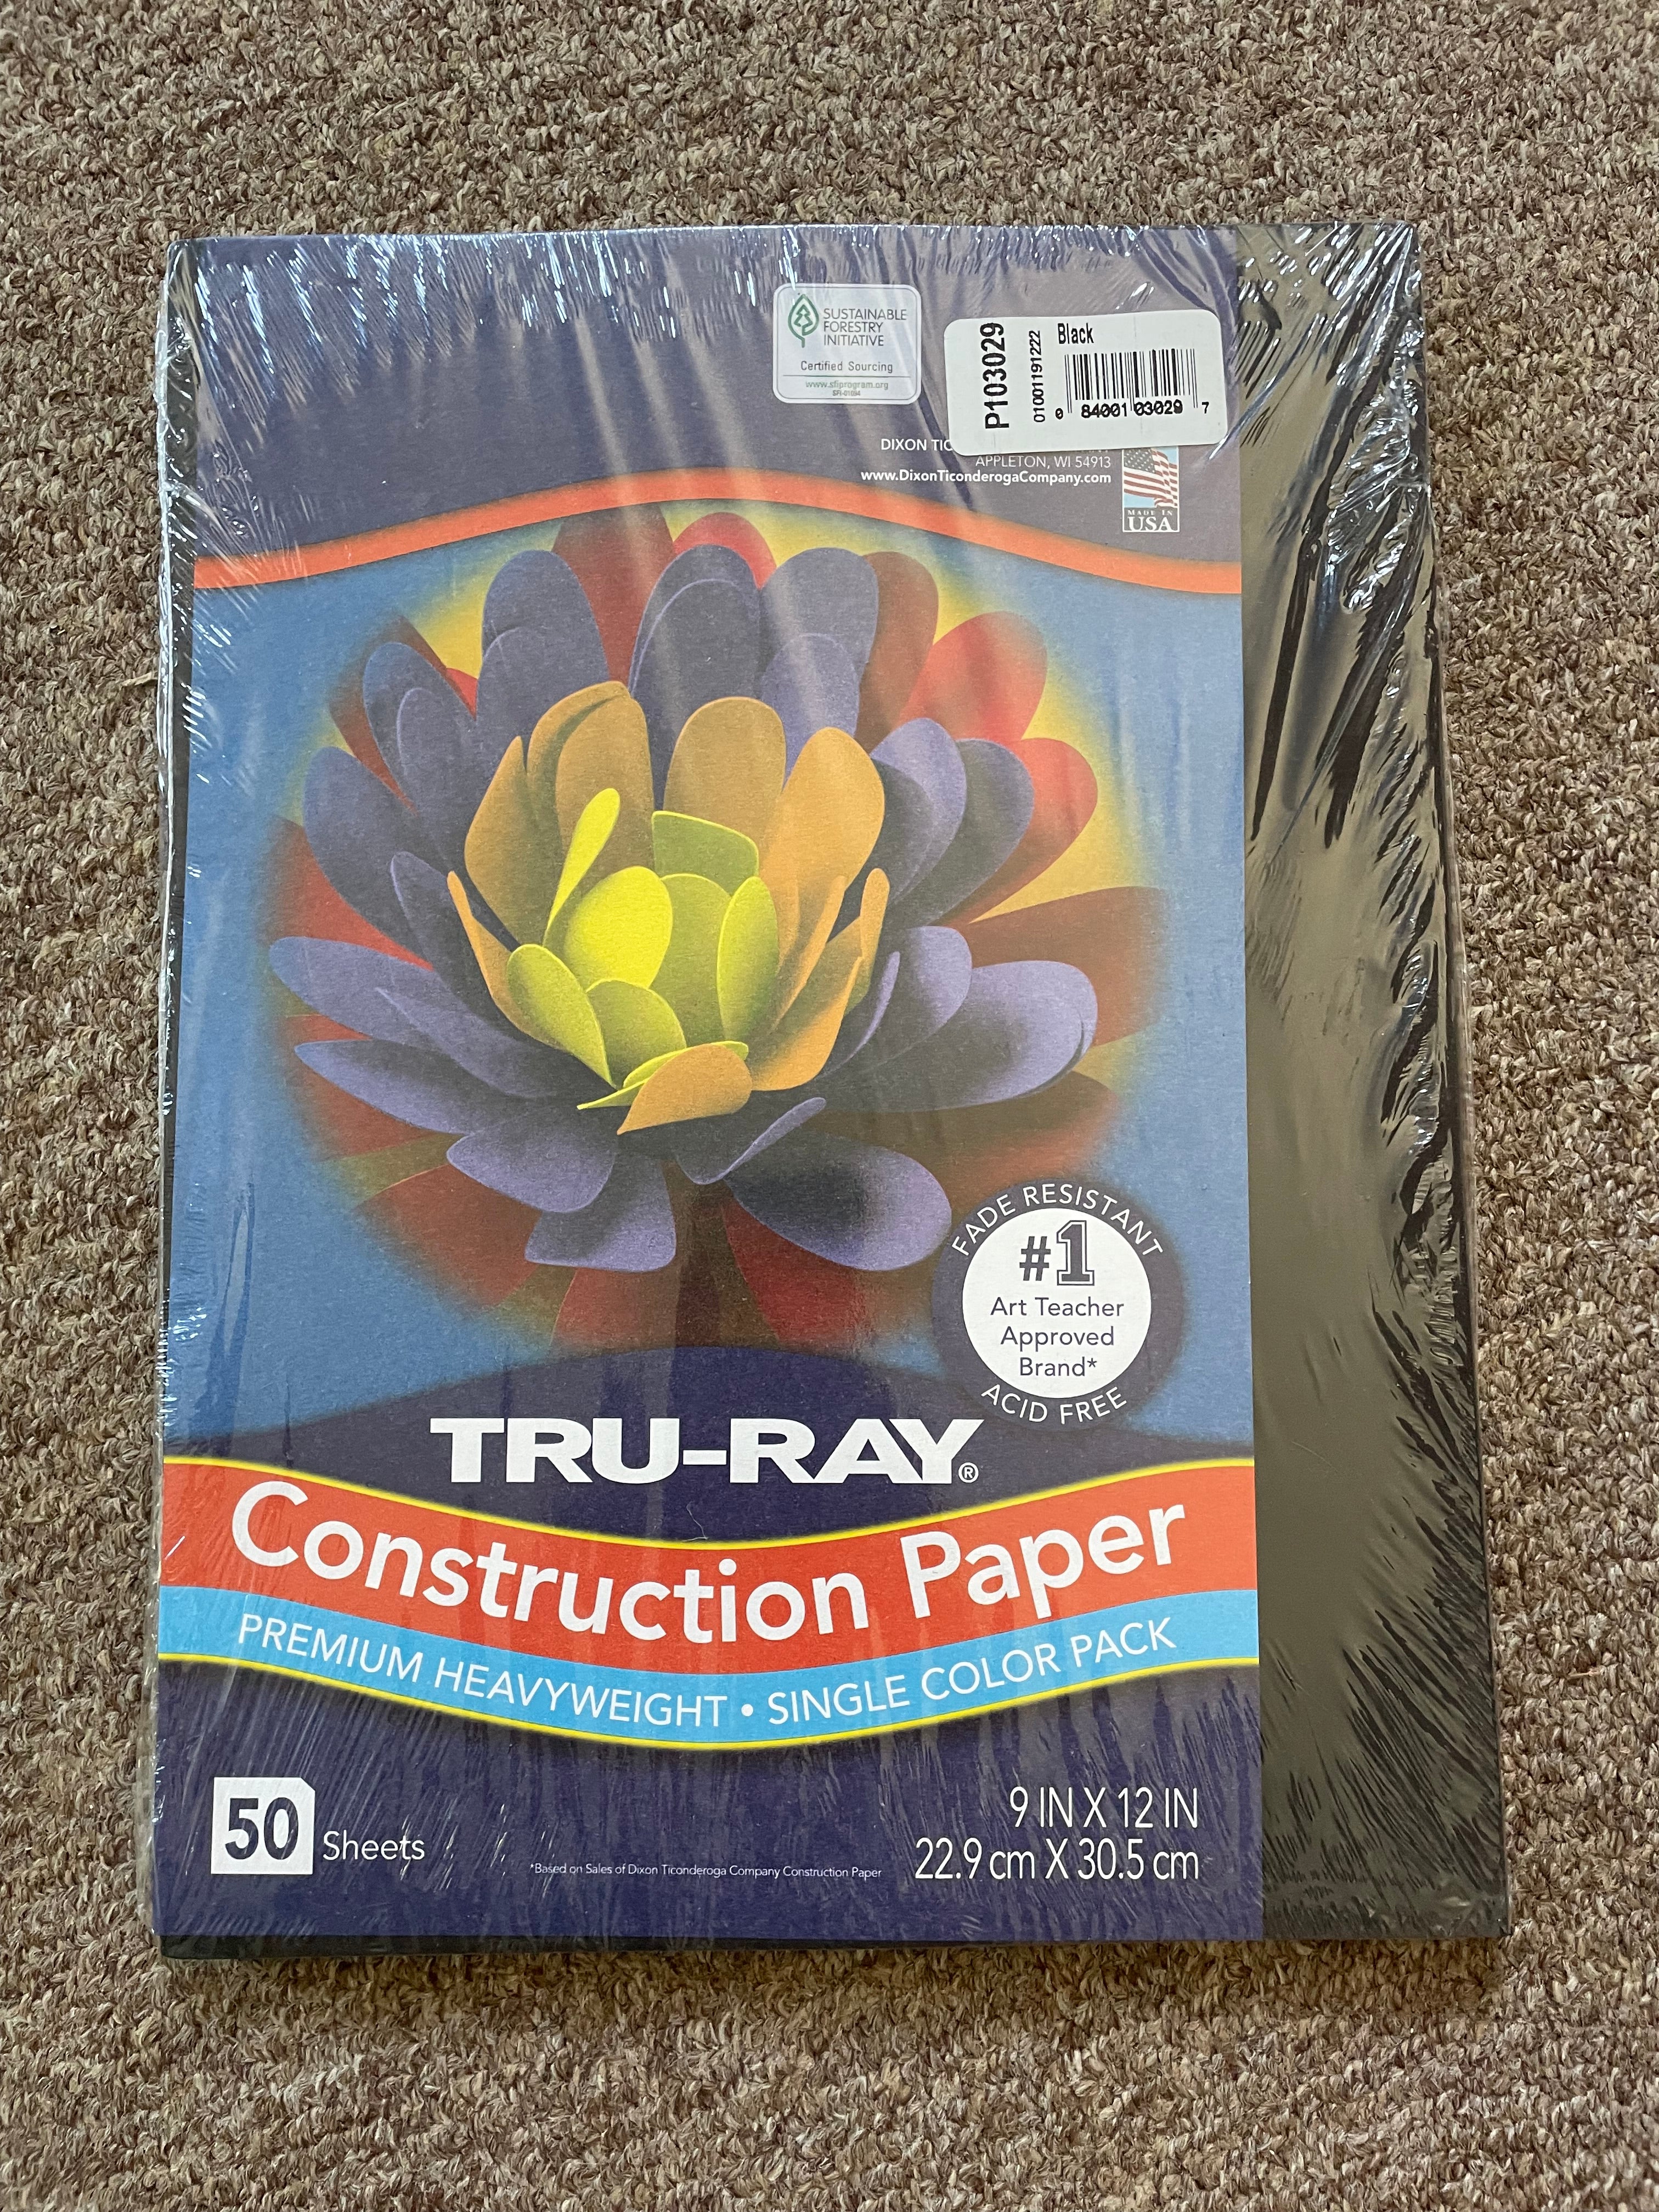 Black construction paper